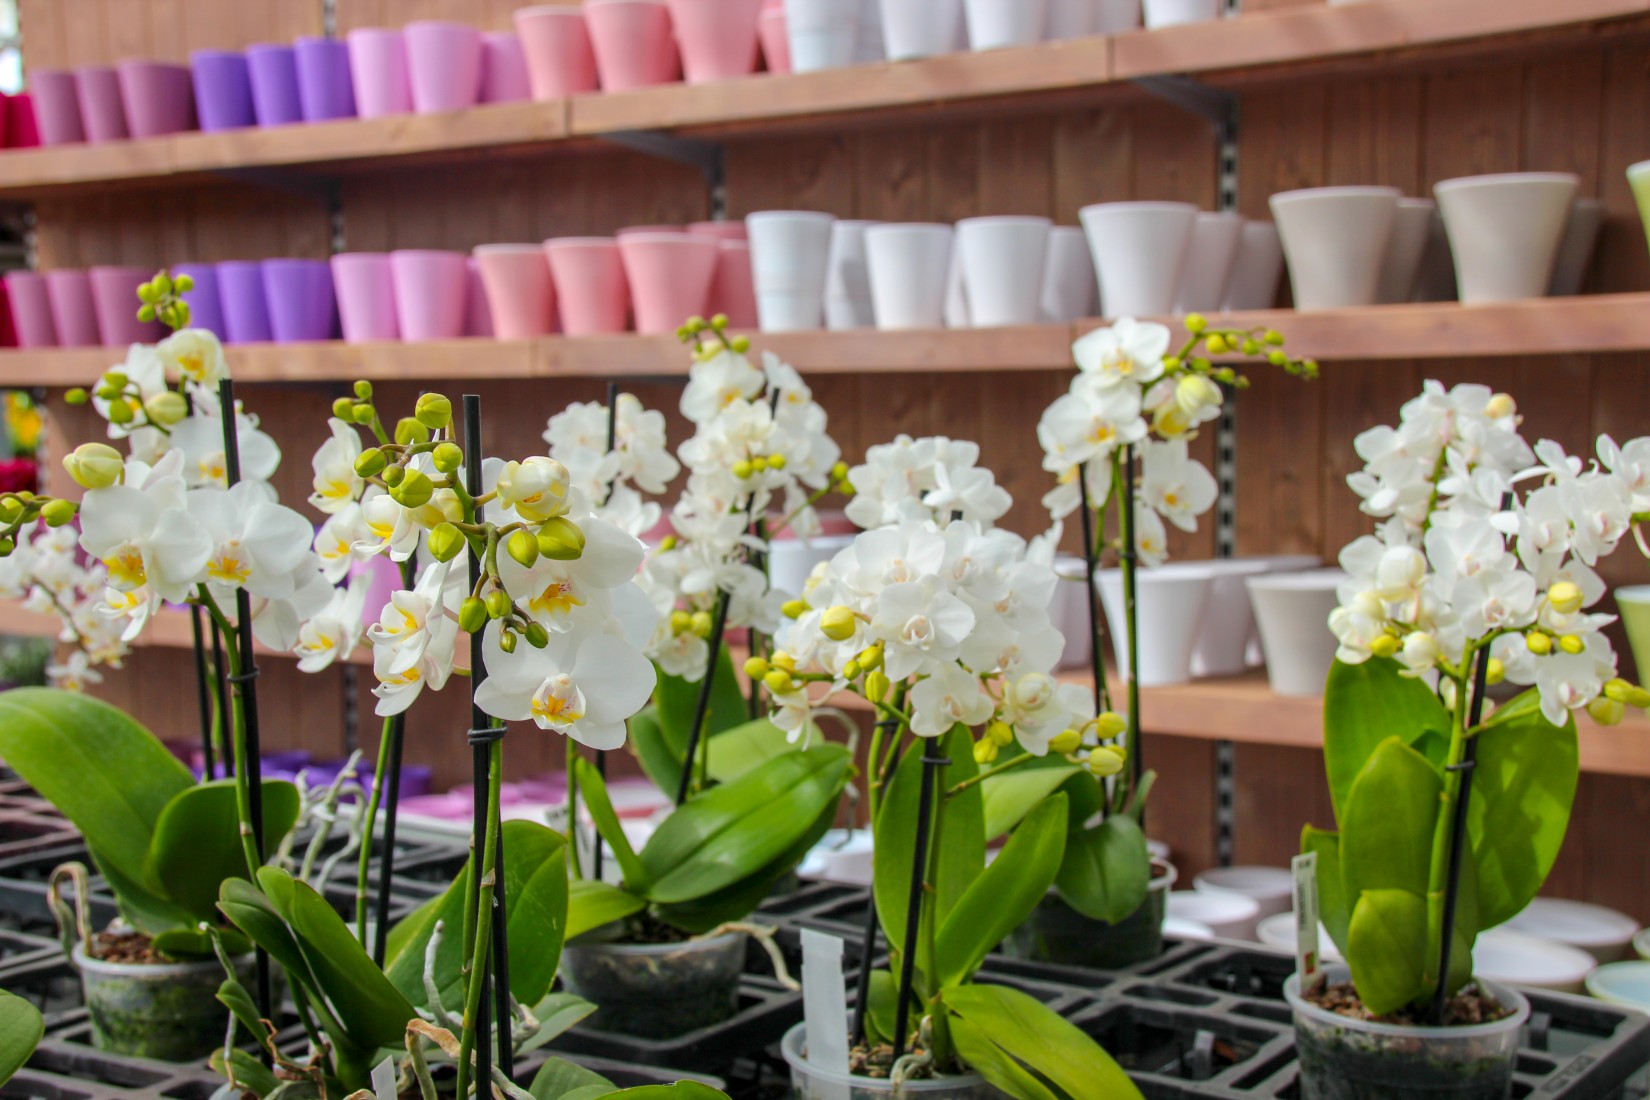 grosse Auswahl an Orchideen